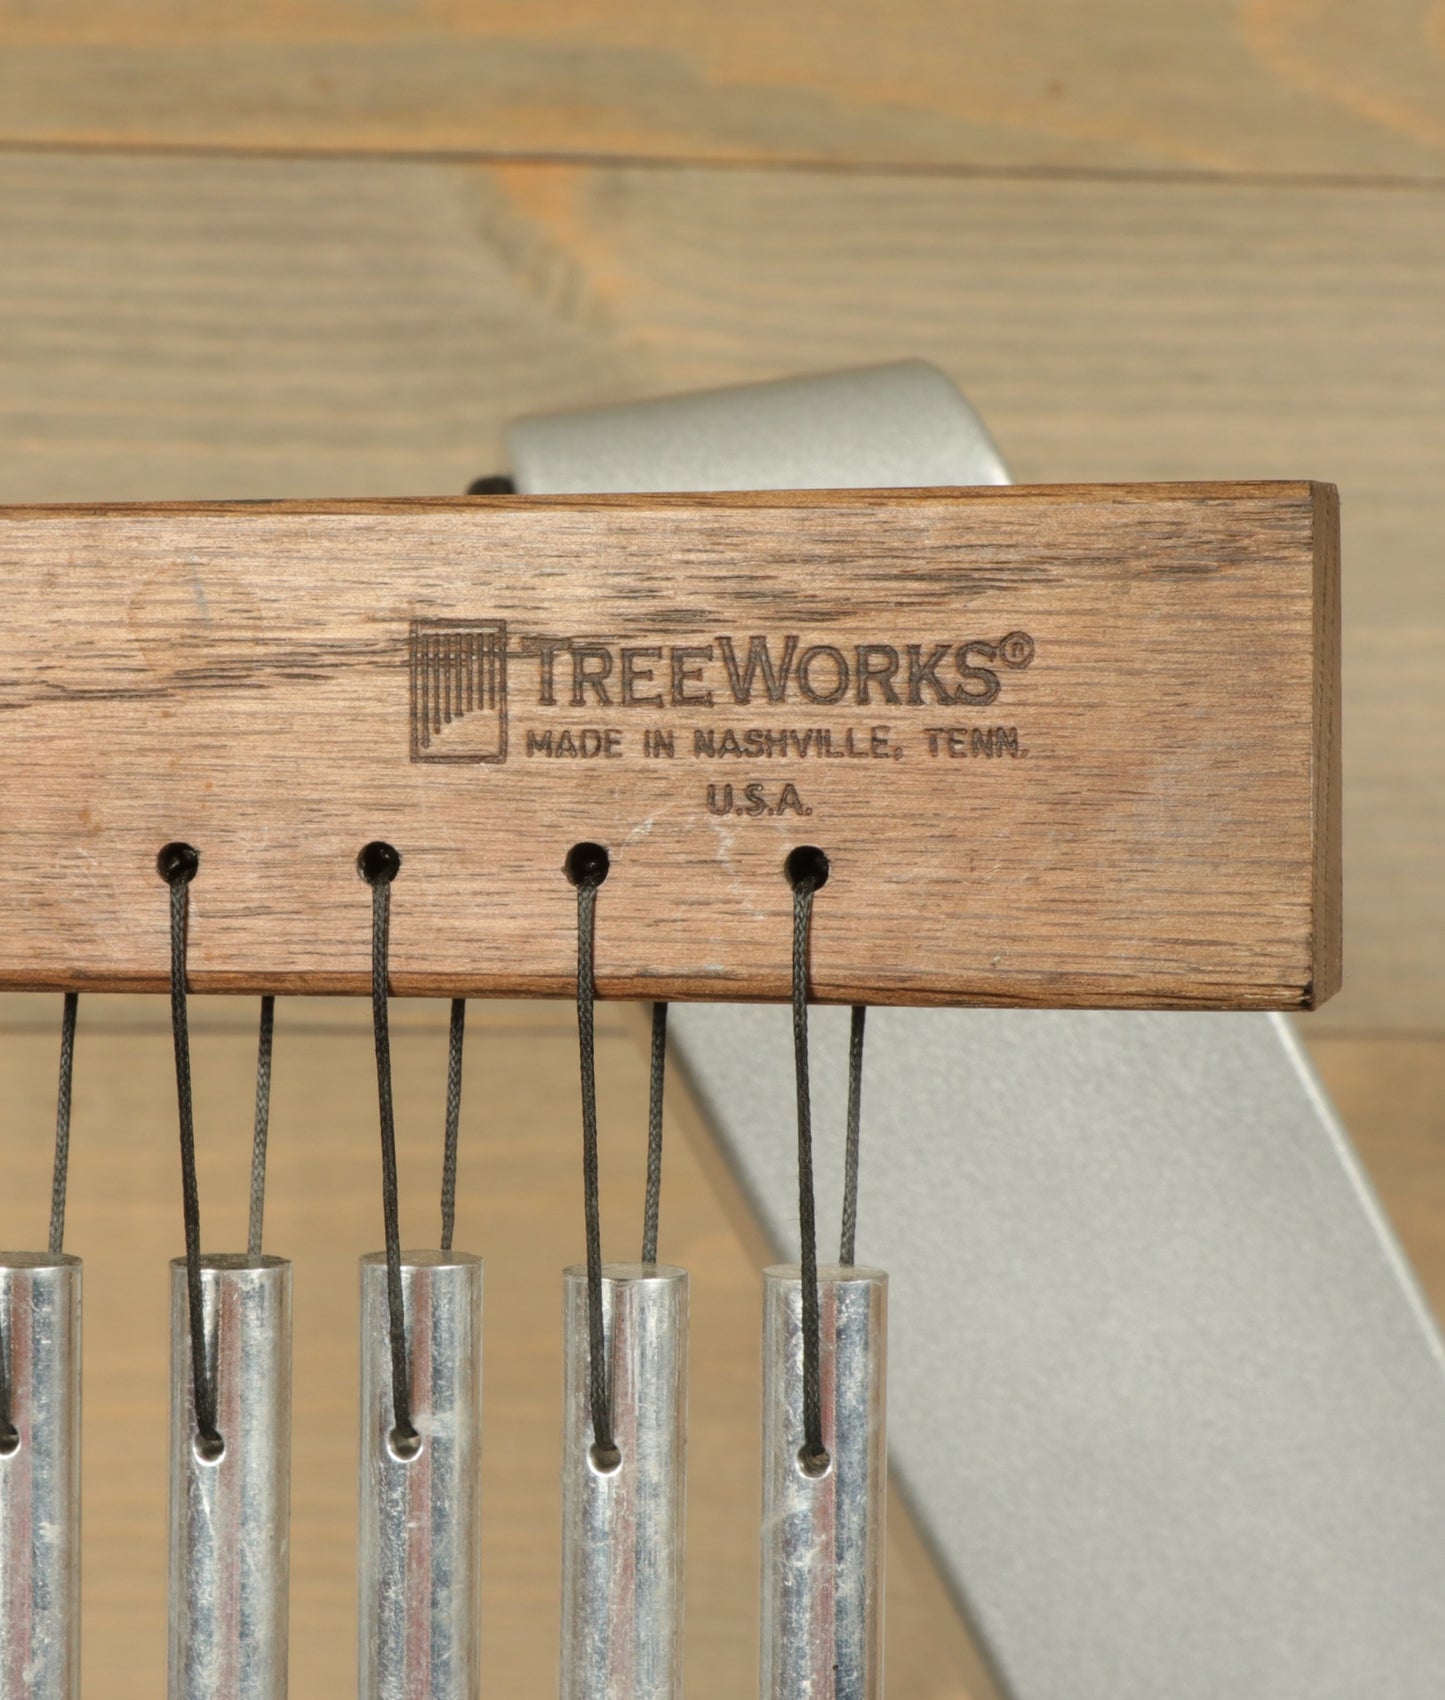 TreeWorks Single-Row Wind Chimes (USED)